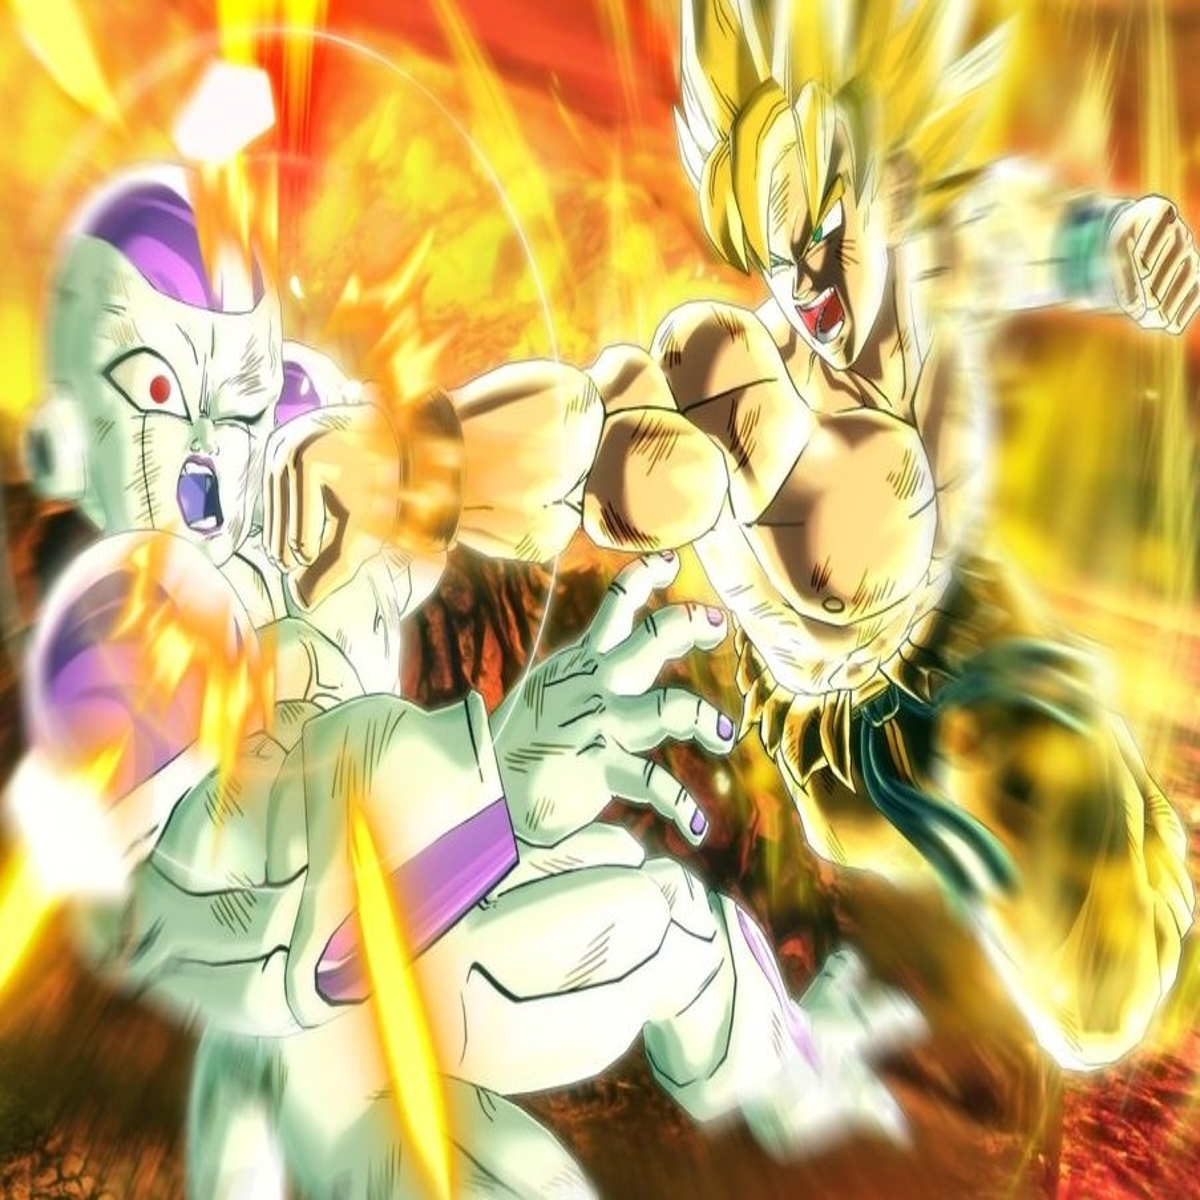 Dragon Ball: Confira as imagens mais impressionantes de Goku! - Aficionados